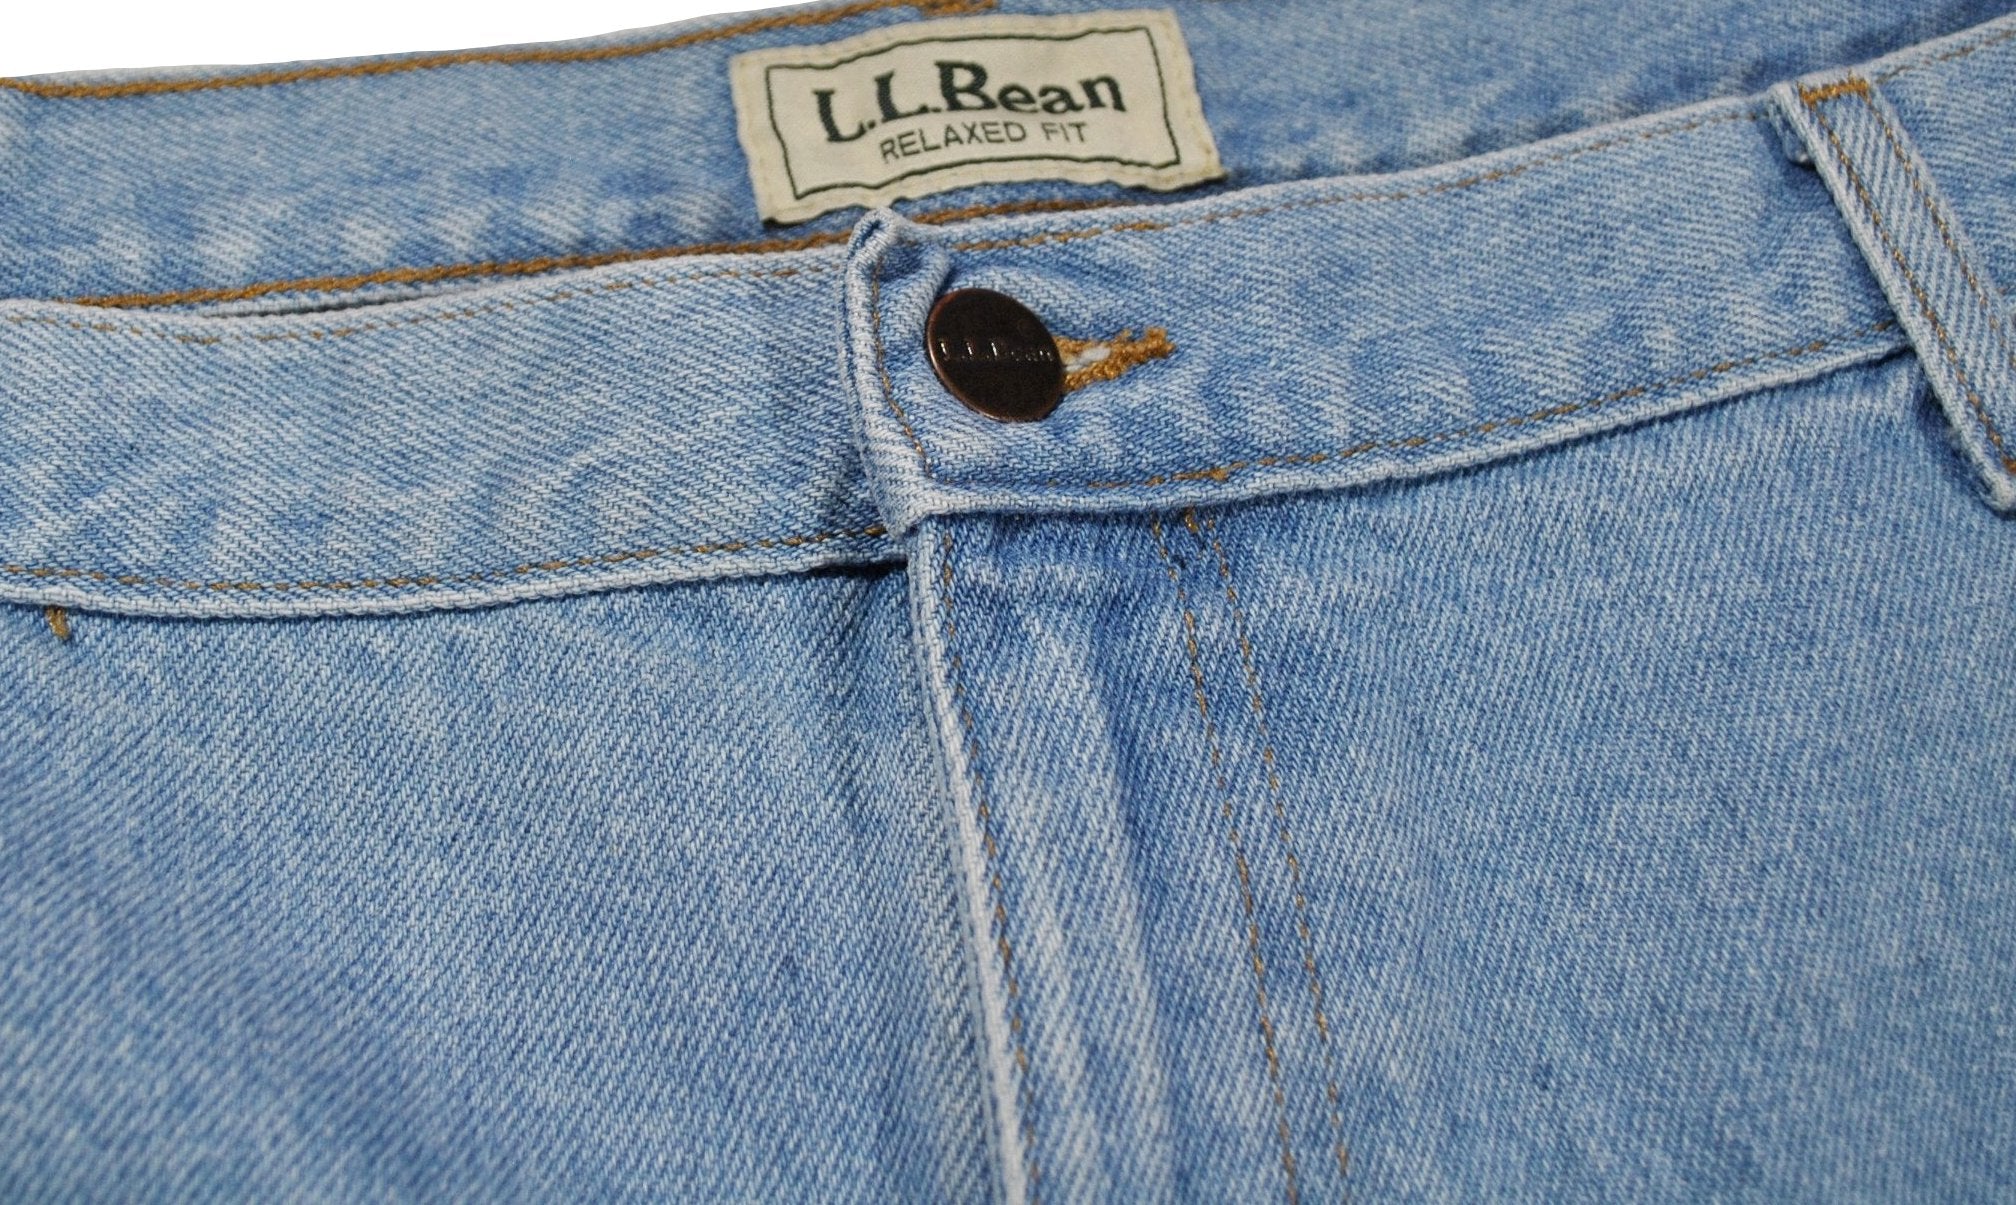 Vintage L.L. Bean Denim Jeans Size 